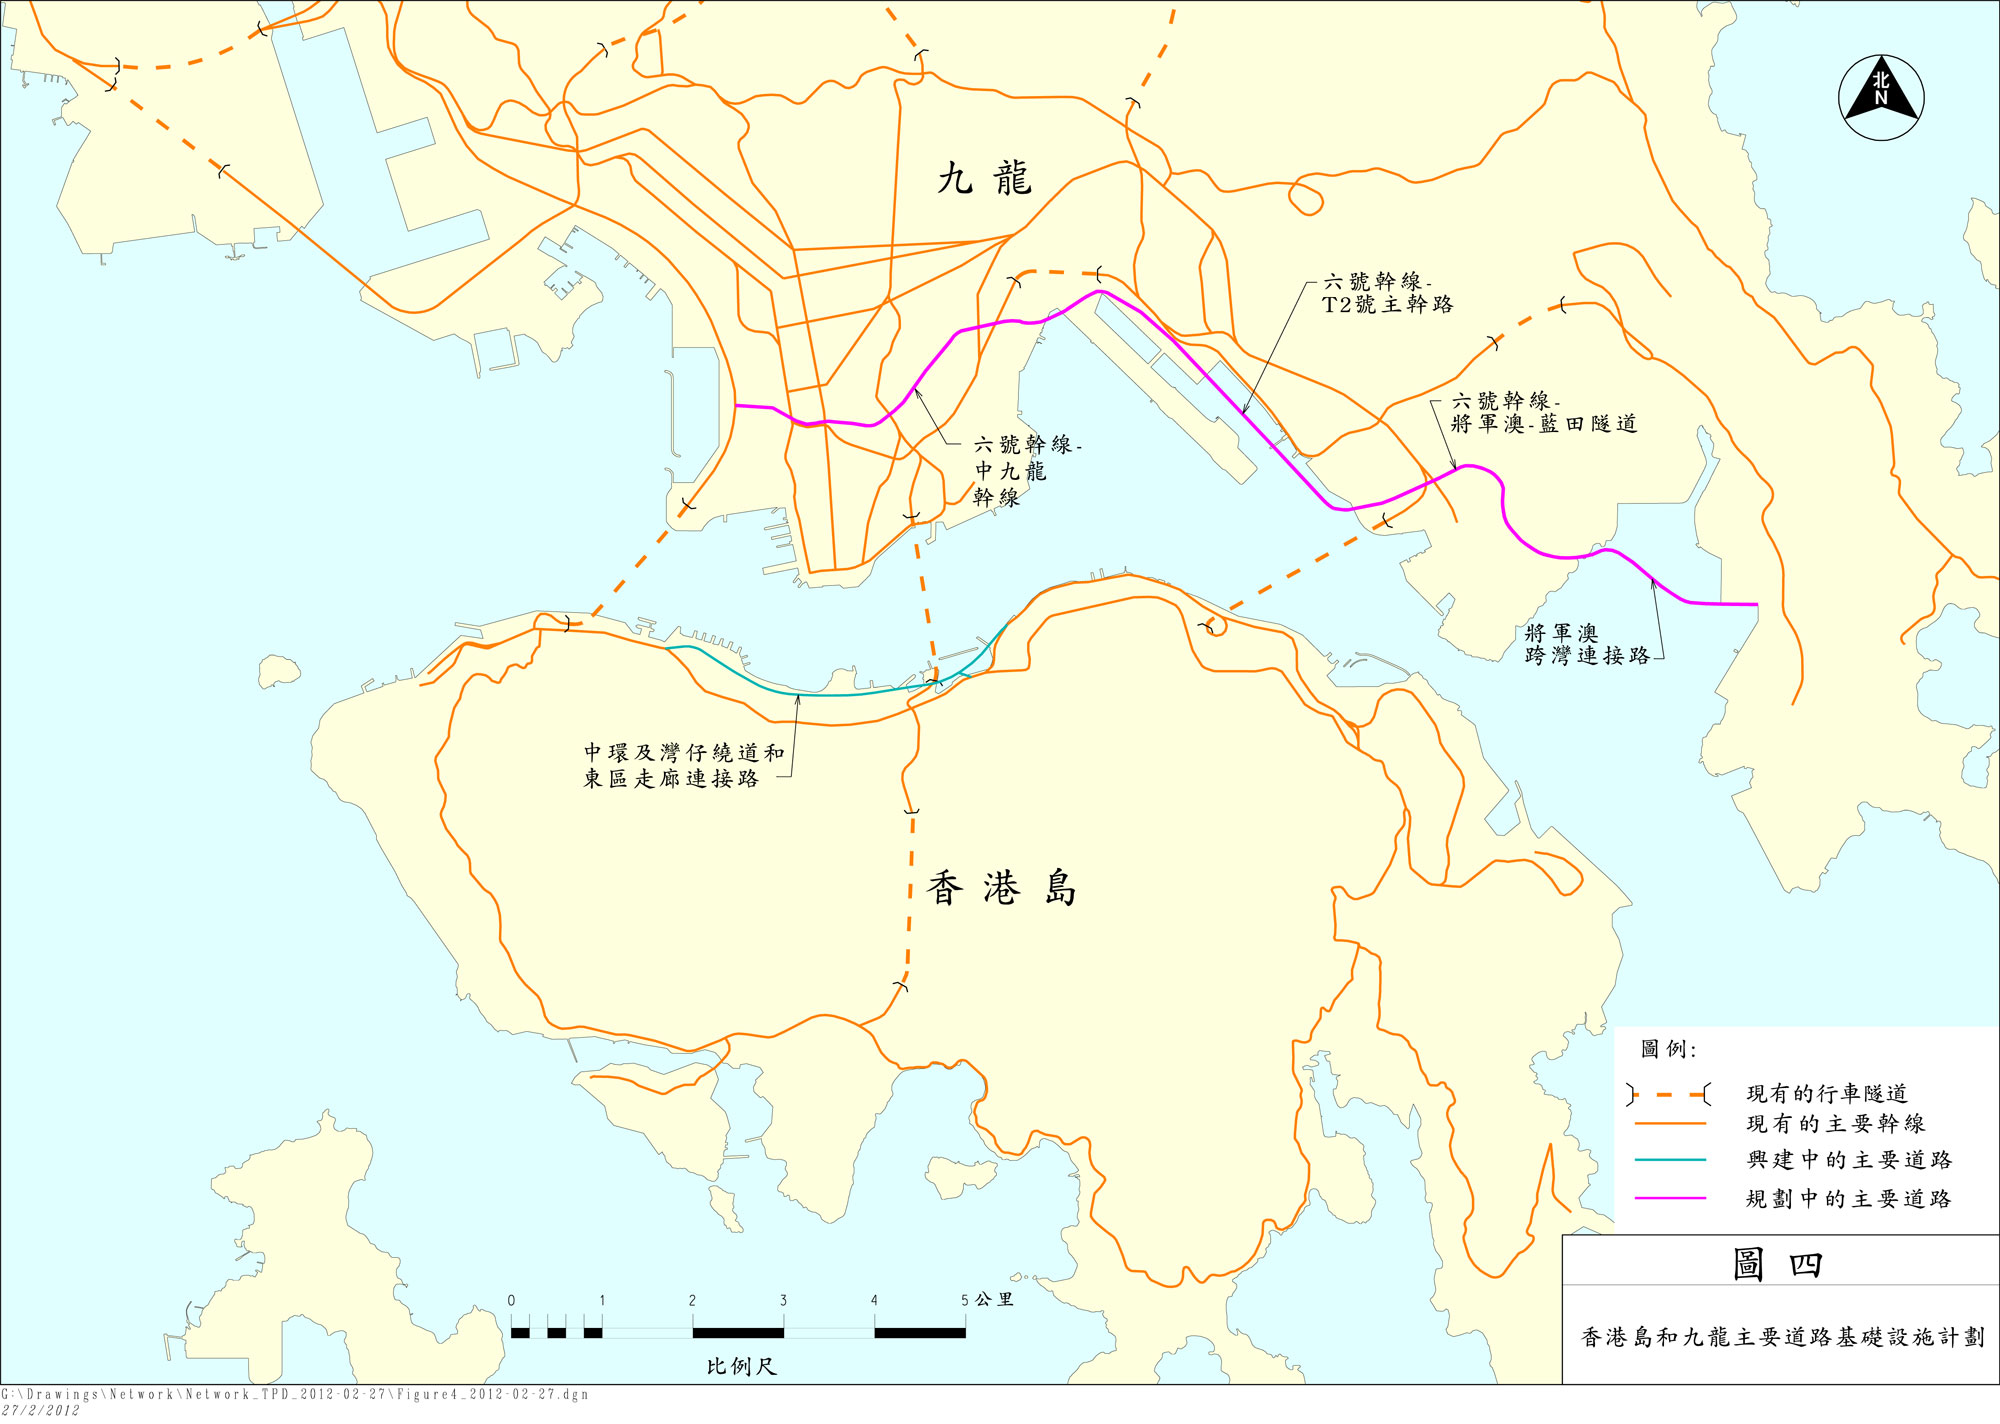 圖四展示香港島和九龍的主要道路基礎設施計劃，描述其主要內容的文字位於本圖之下。工程資料則可參考表1.1。 